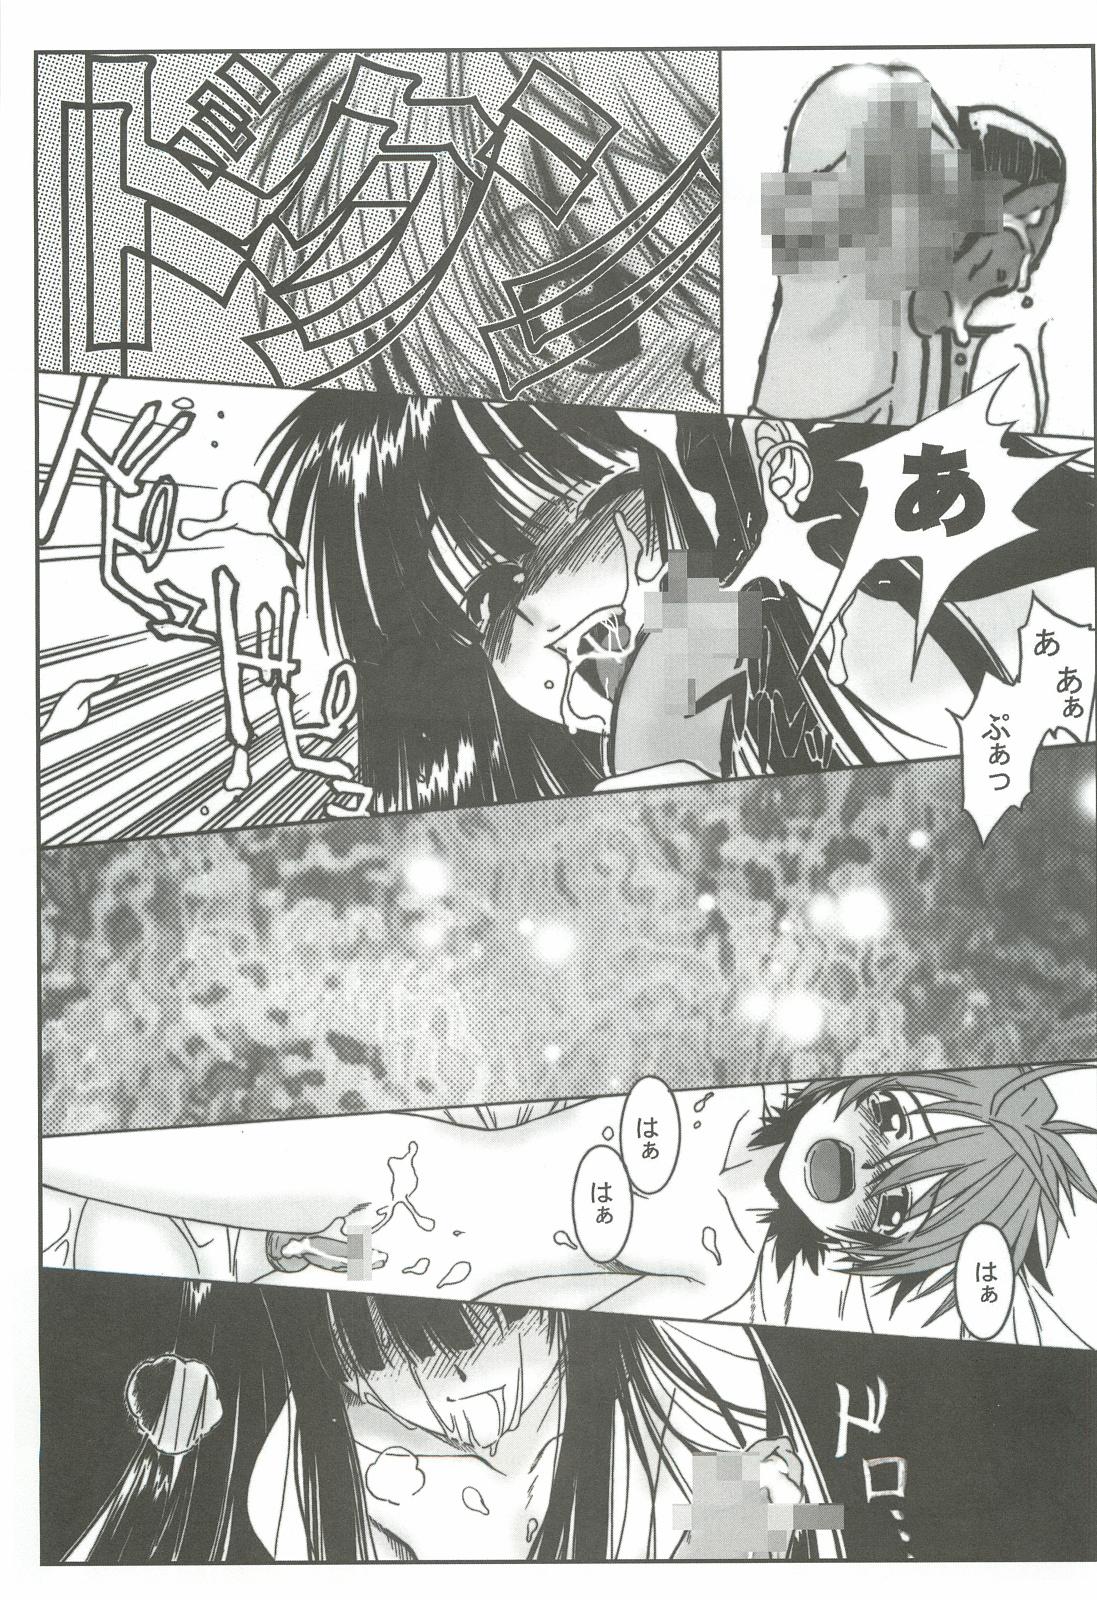 Cogiendo Zoku Nangoku Shuka - Mahou sensei negima Love hina Camgirls - Page 10